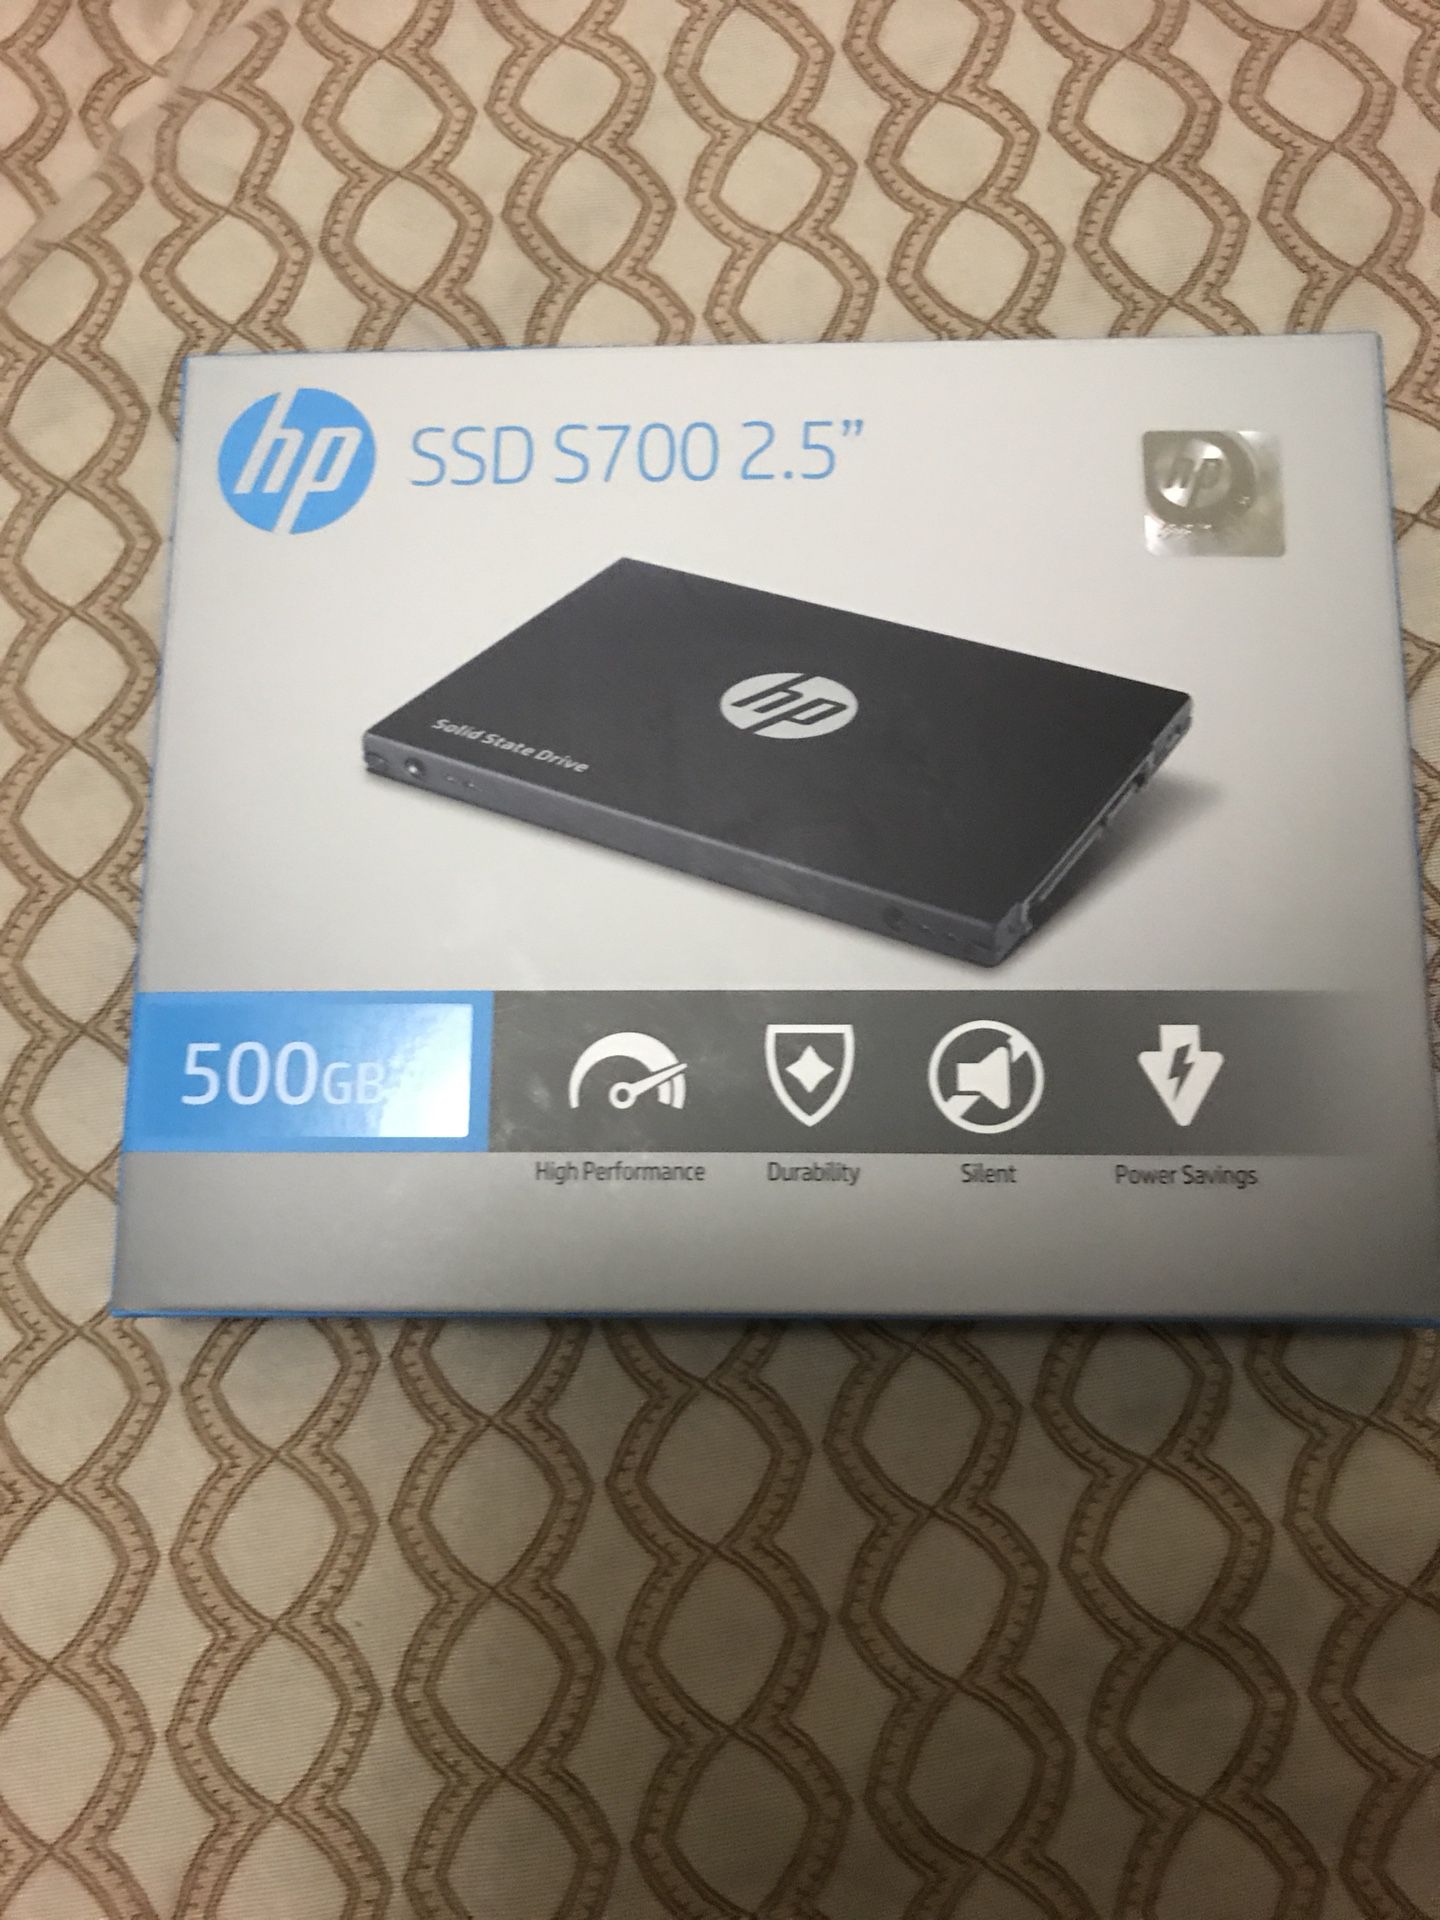 HP SSD S700 2.5” 500gb